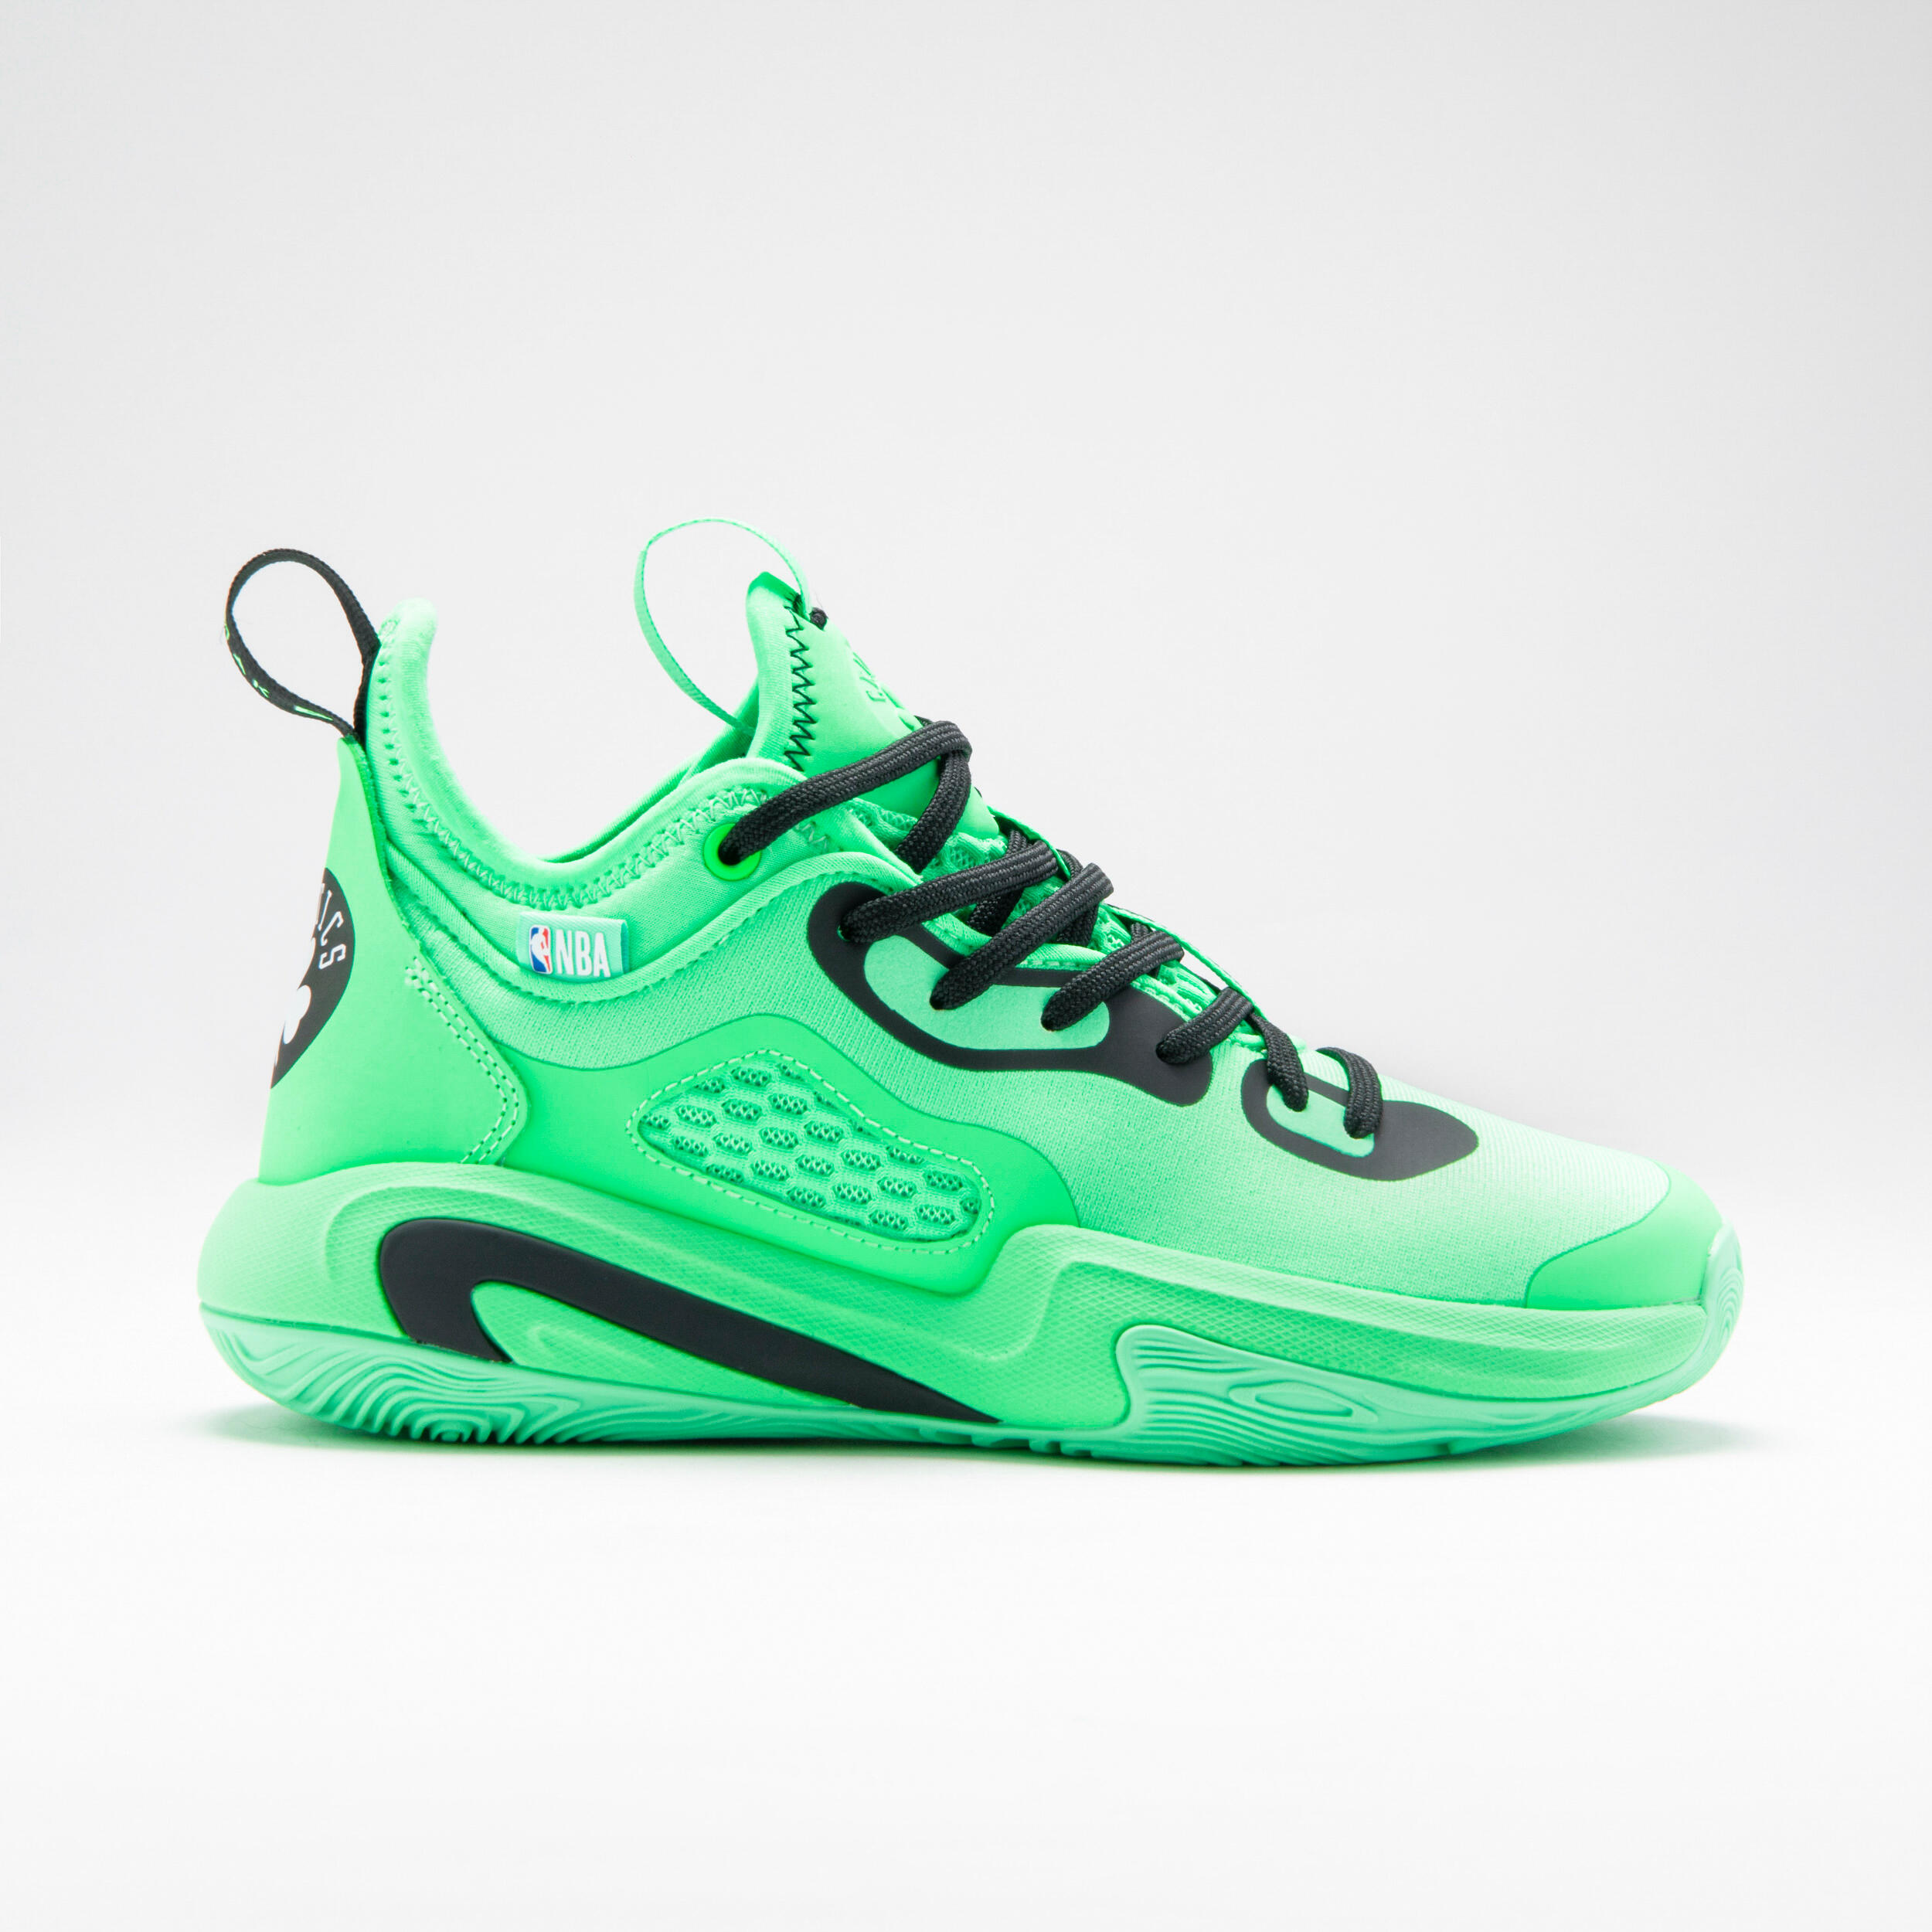 TARMAK Kids' Basketball Shoes SE900 Mini Me - Green/NBA Boston Celtics